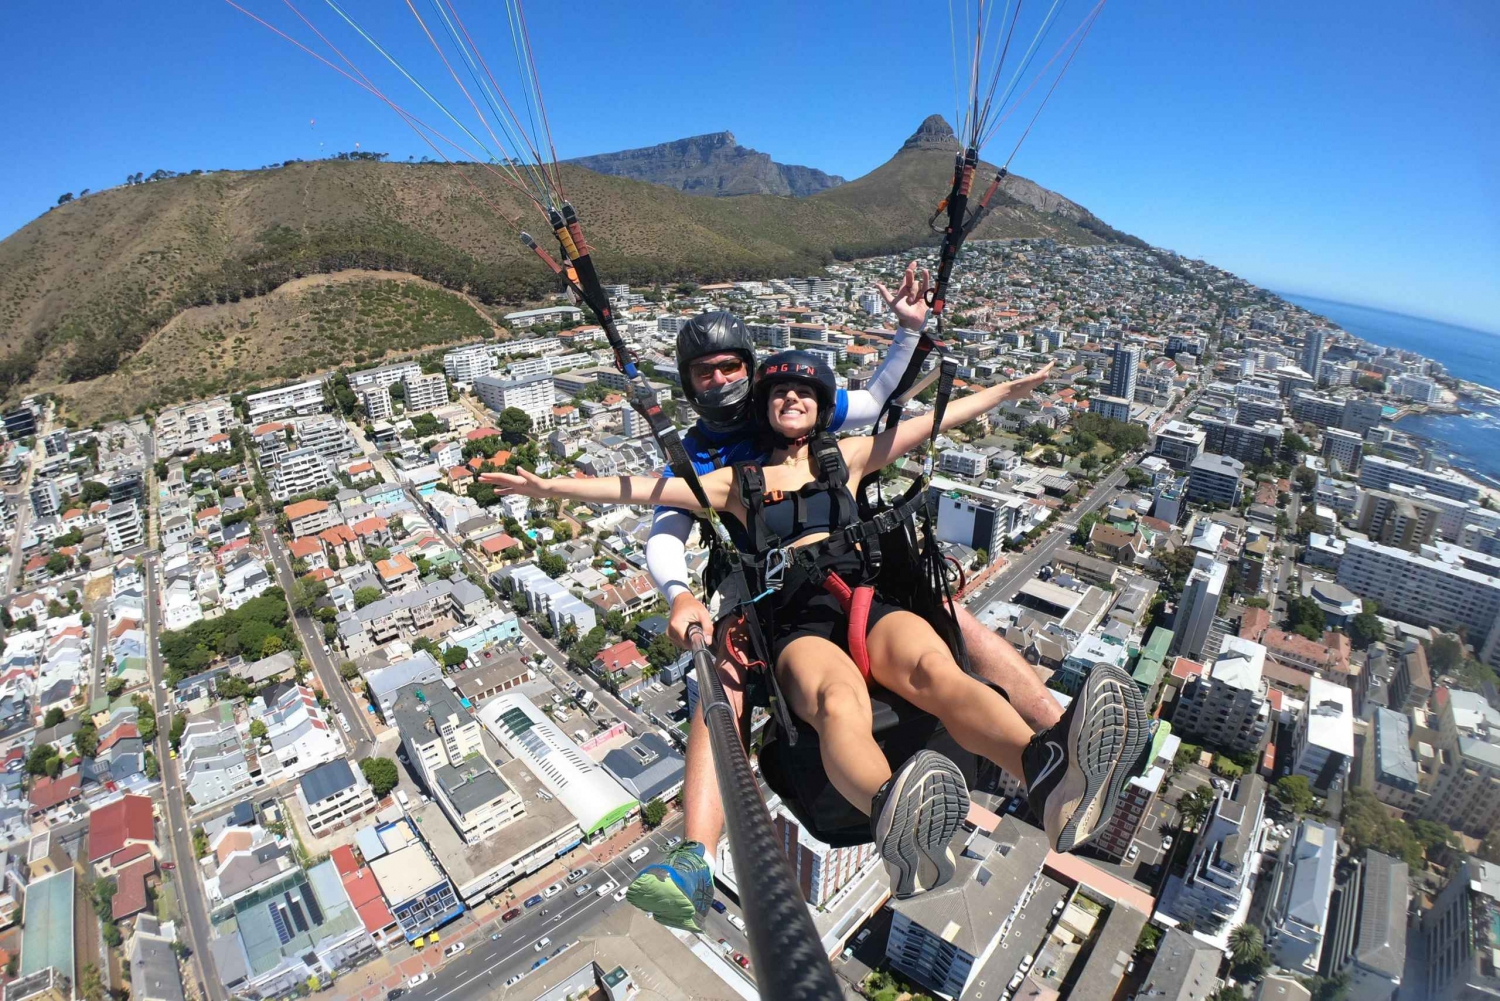 Kapstaden: Tandemskärmflygning med utsikt över Taffelberget